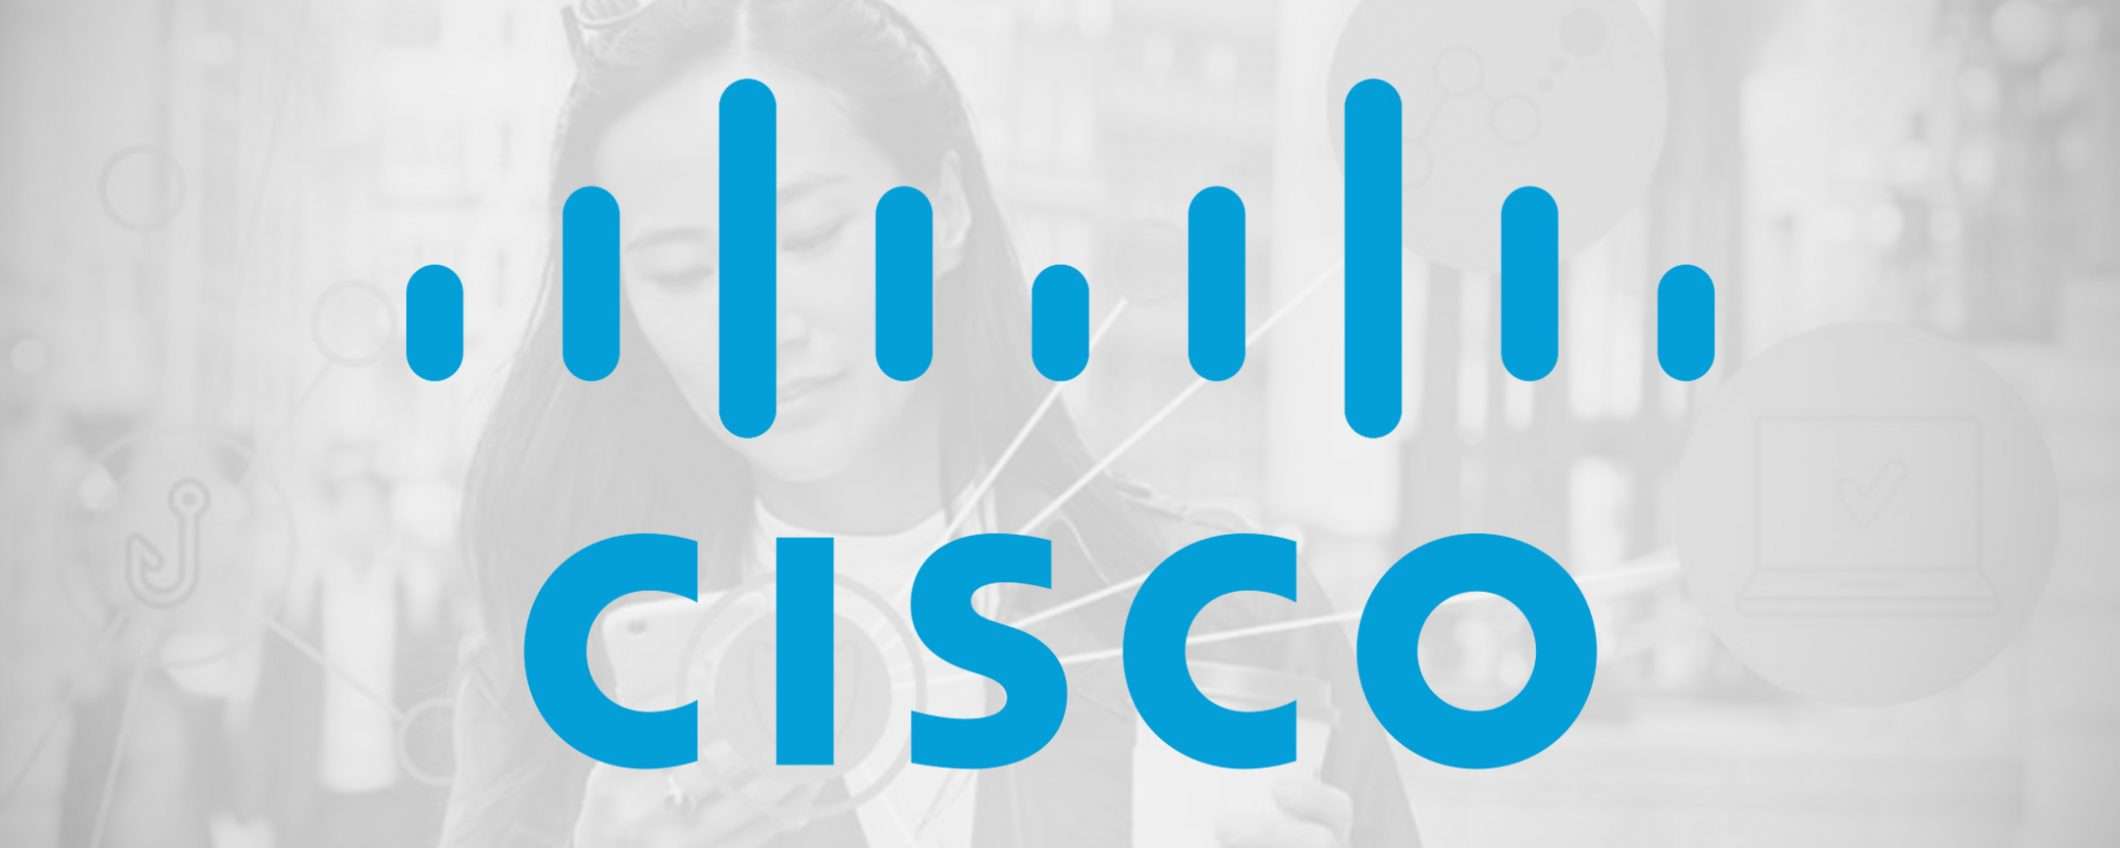 IMImobile è la nuova acquisizione di Cisco